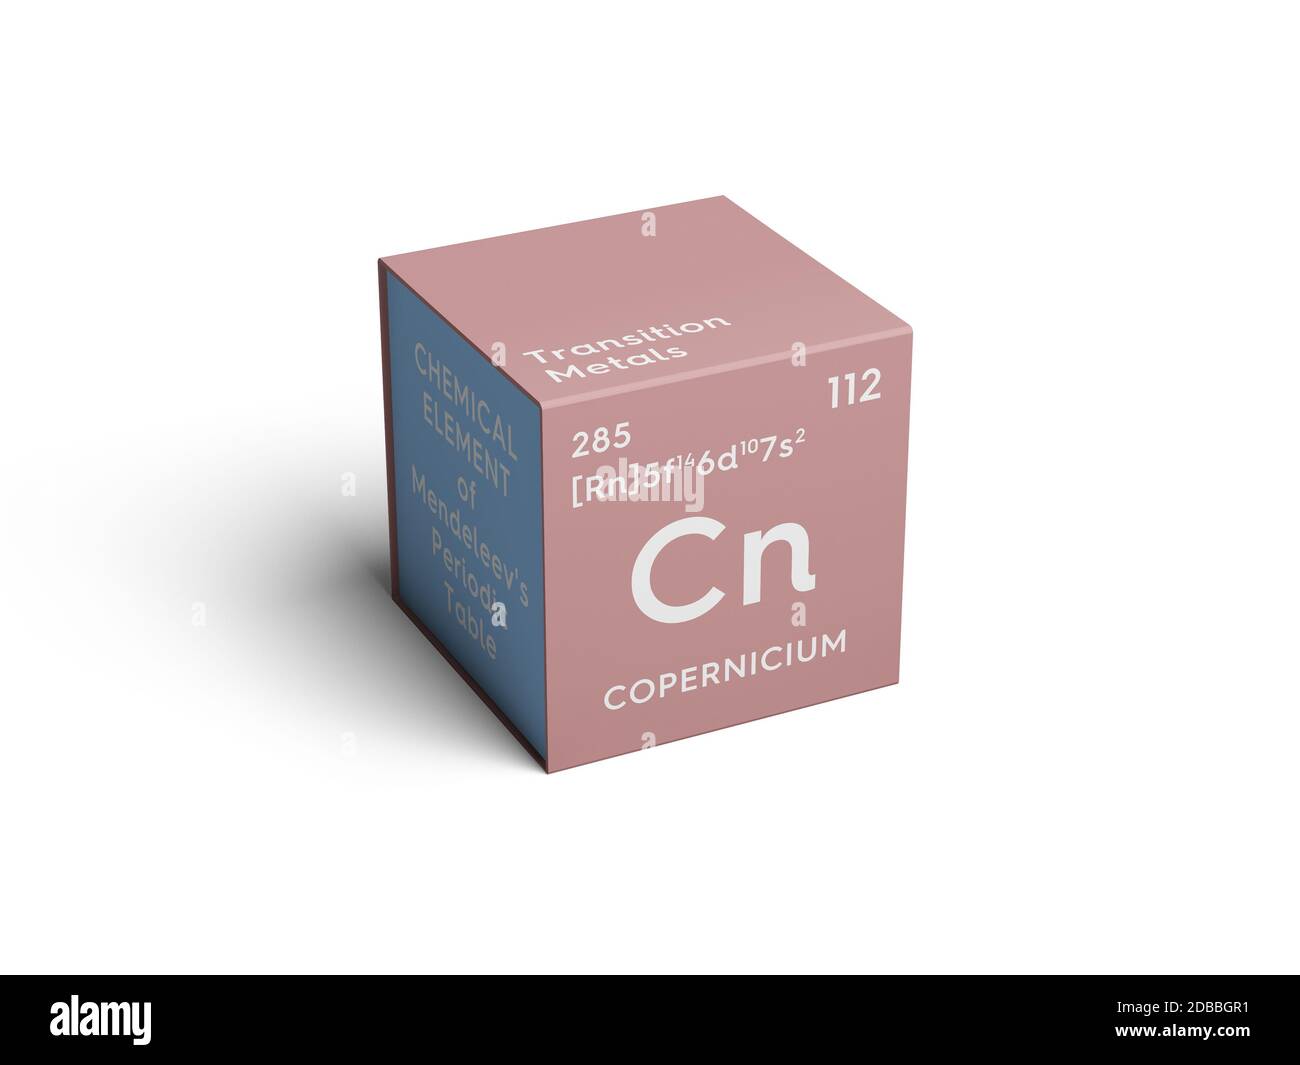 Copernicium. Transition metals. Chemical Element of Mendeleev's Periodic Table. Copernicium in square cube creative concept. 3D illustration. Stock Photo